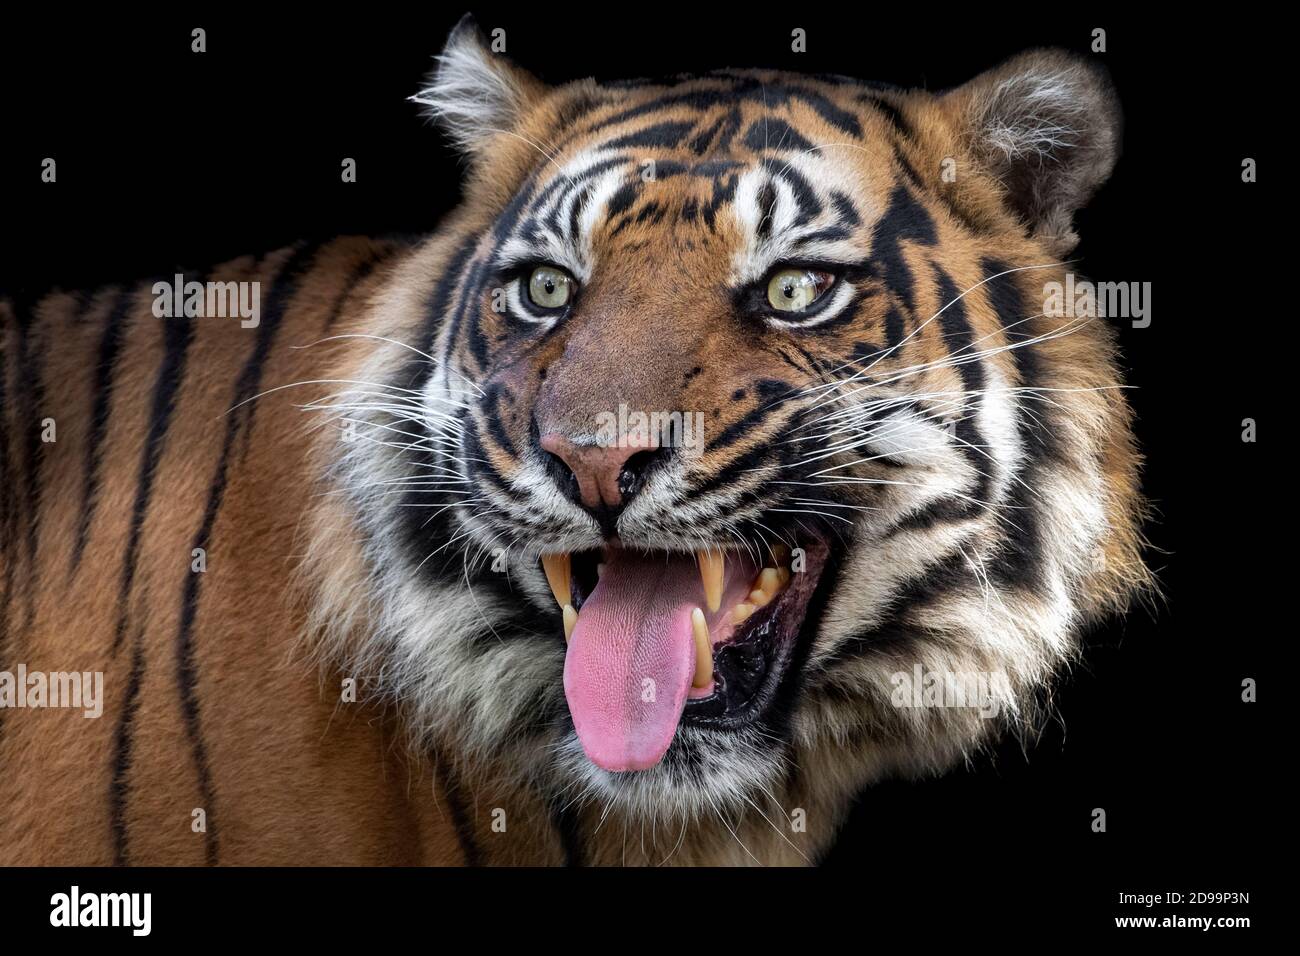 Male Sumatran tiger showing tongue Stock Photo